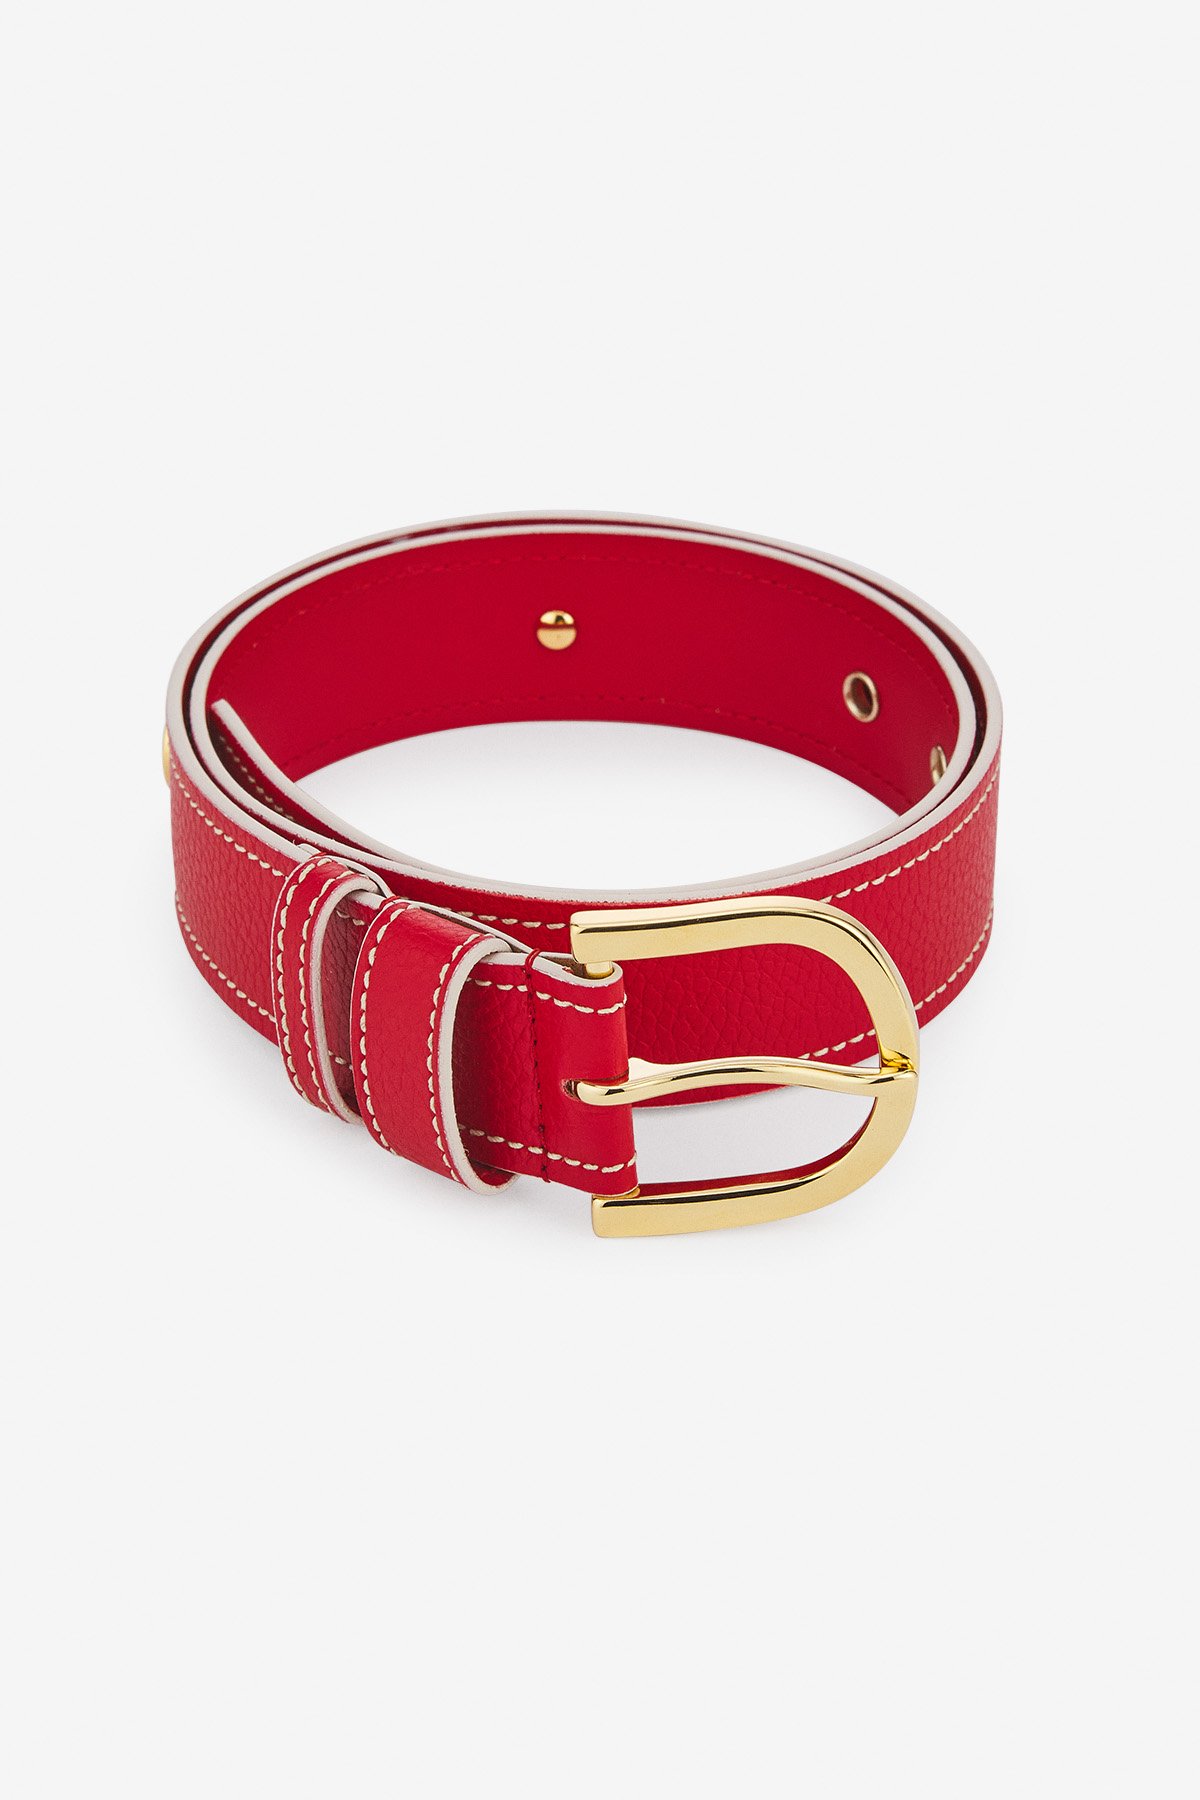 Leather belt with saddle stitches